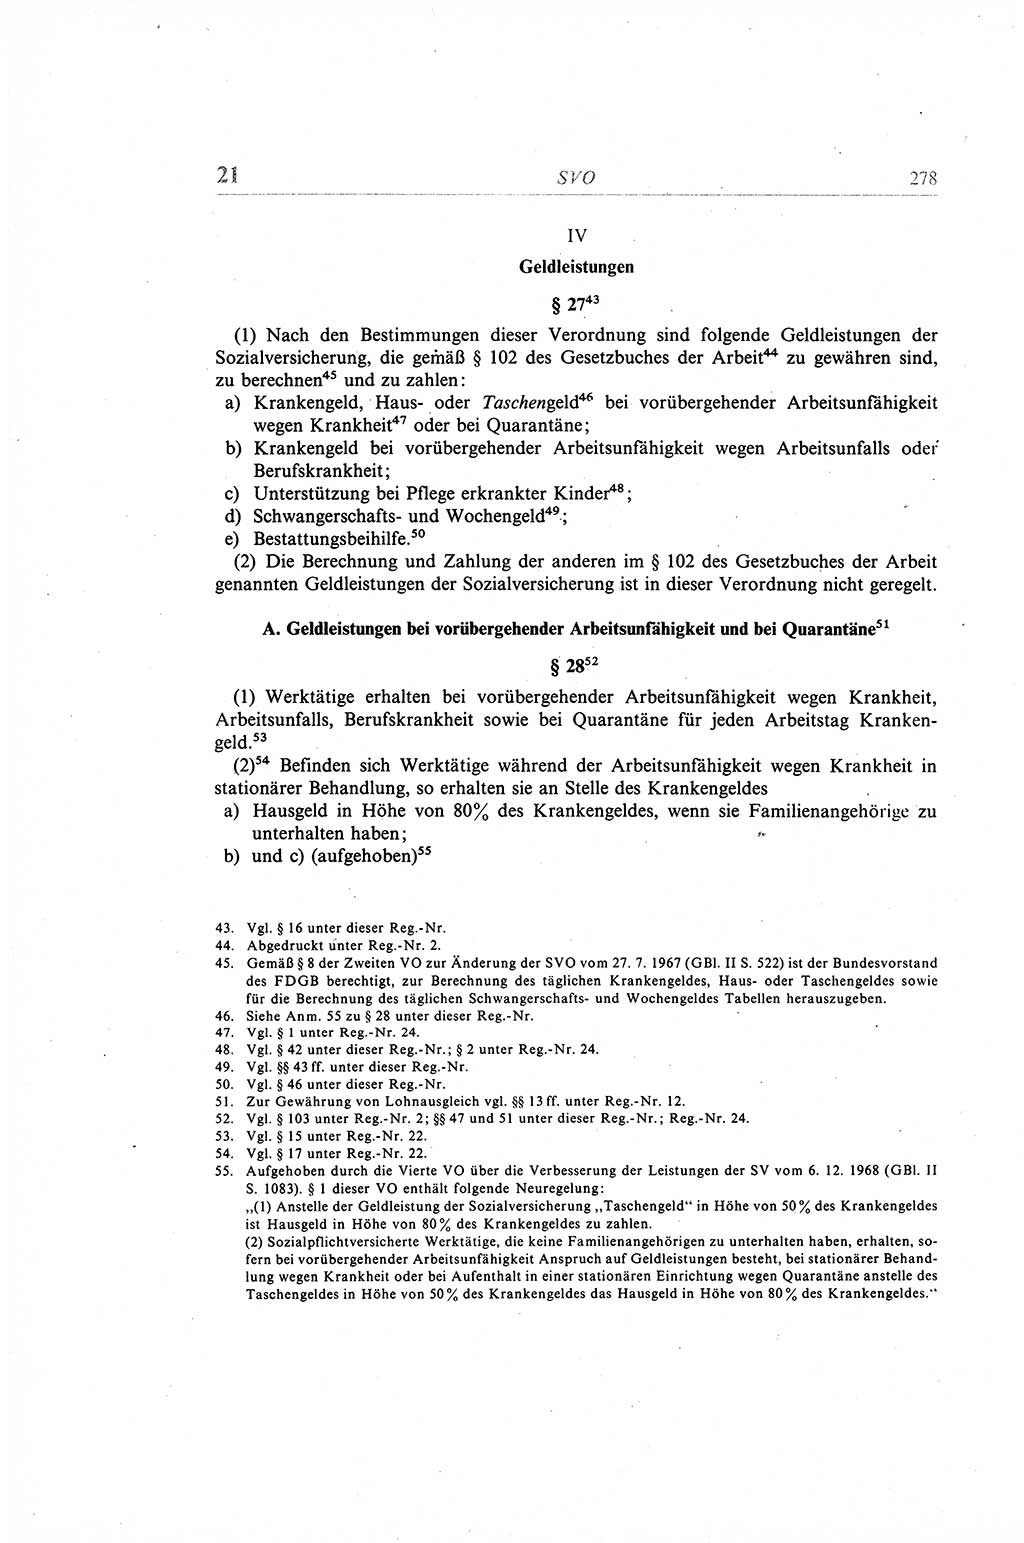 Gesetzbuch der Arbeit (GBA) und andere ausgewählte rechtliche Bestimmungen [Deutsche Demokratische Republik (DDR)] 1968, Seite 278 (GBA DDR 1968, S. 278)